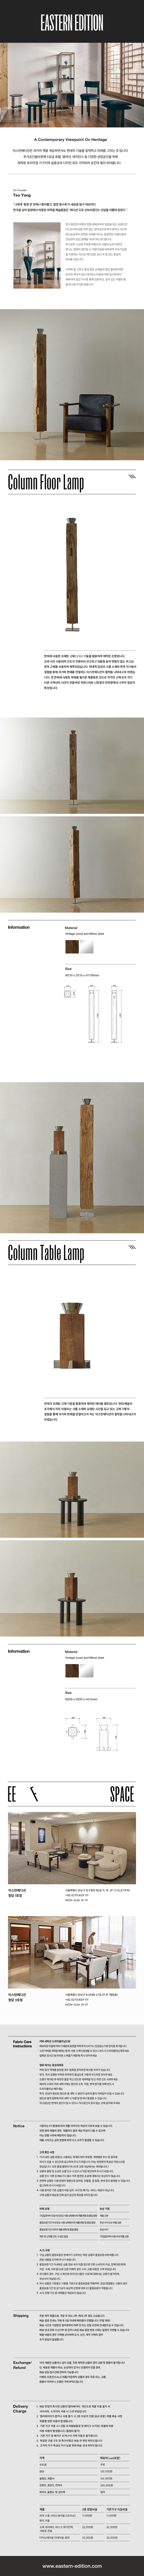 ColumnFloor+TableLamp_123016.jpg